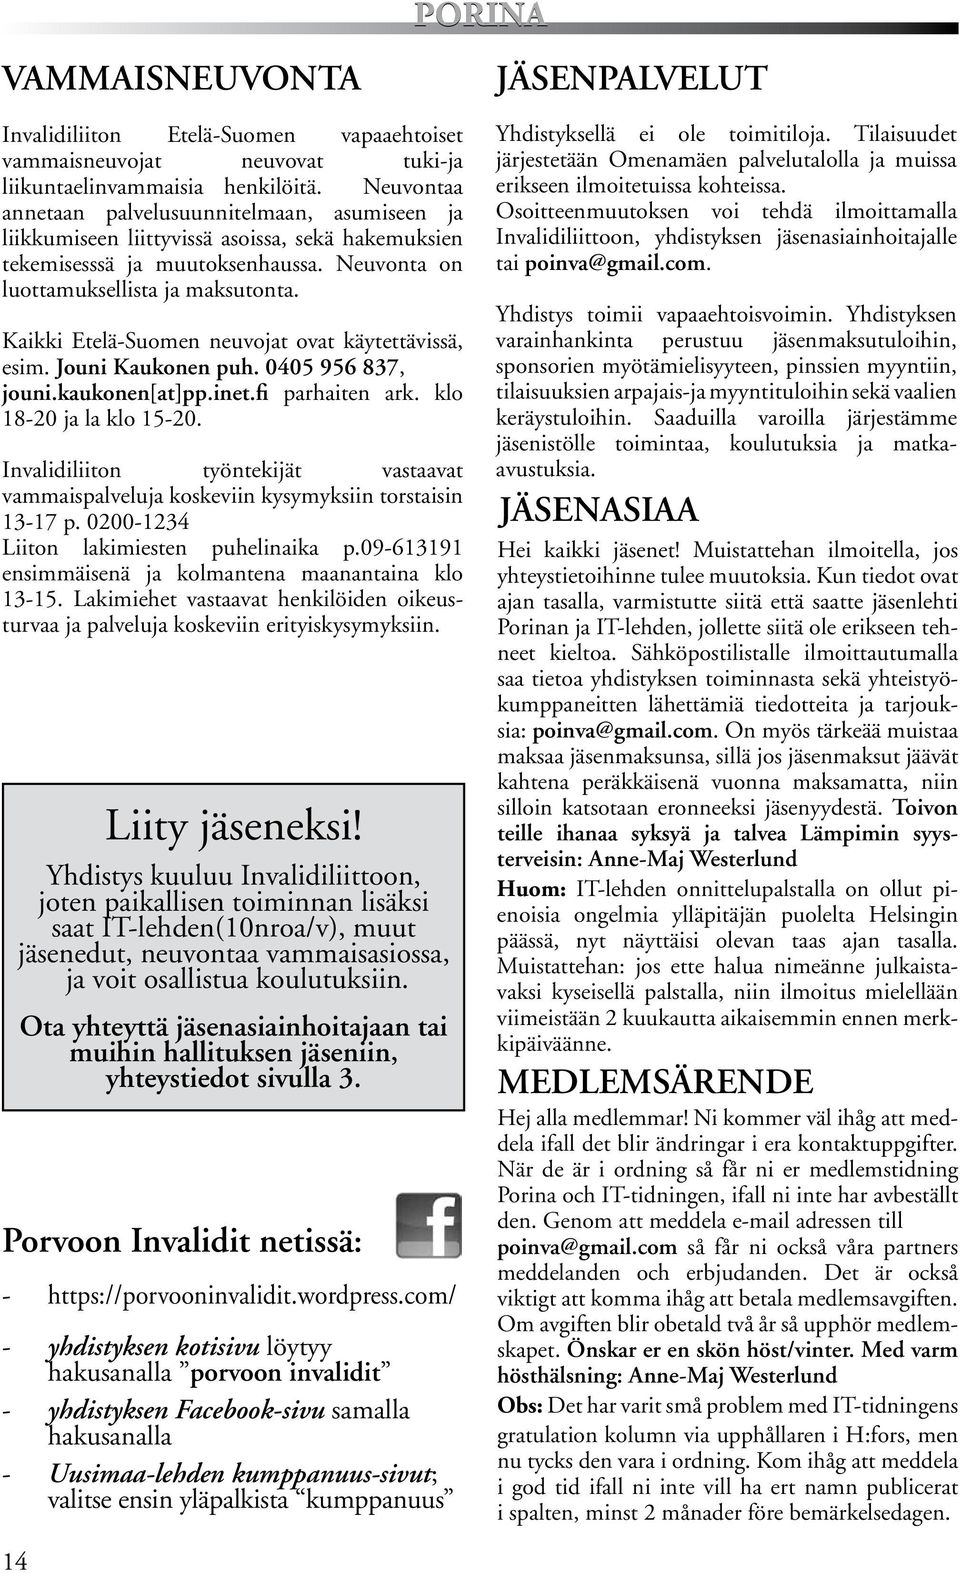 Kaikki Etelä-Suomen neuvojat ovat käytettävissä, esim. Jouni Kaukonen puh. 0405 956 837, jouni.kaukonen[at]pp.inet.fi parhaiten ark. klo 18-20 ja la klo 15-20.